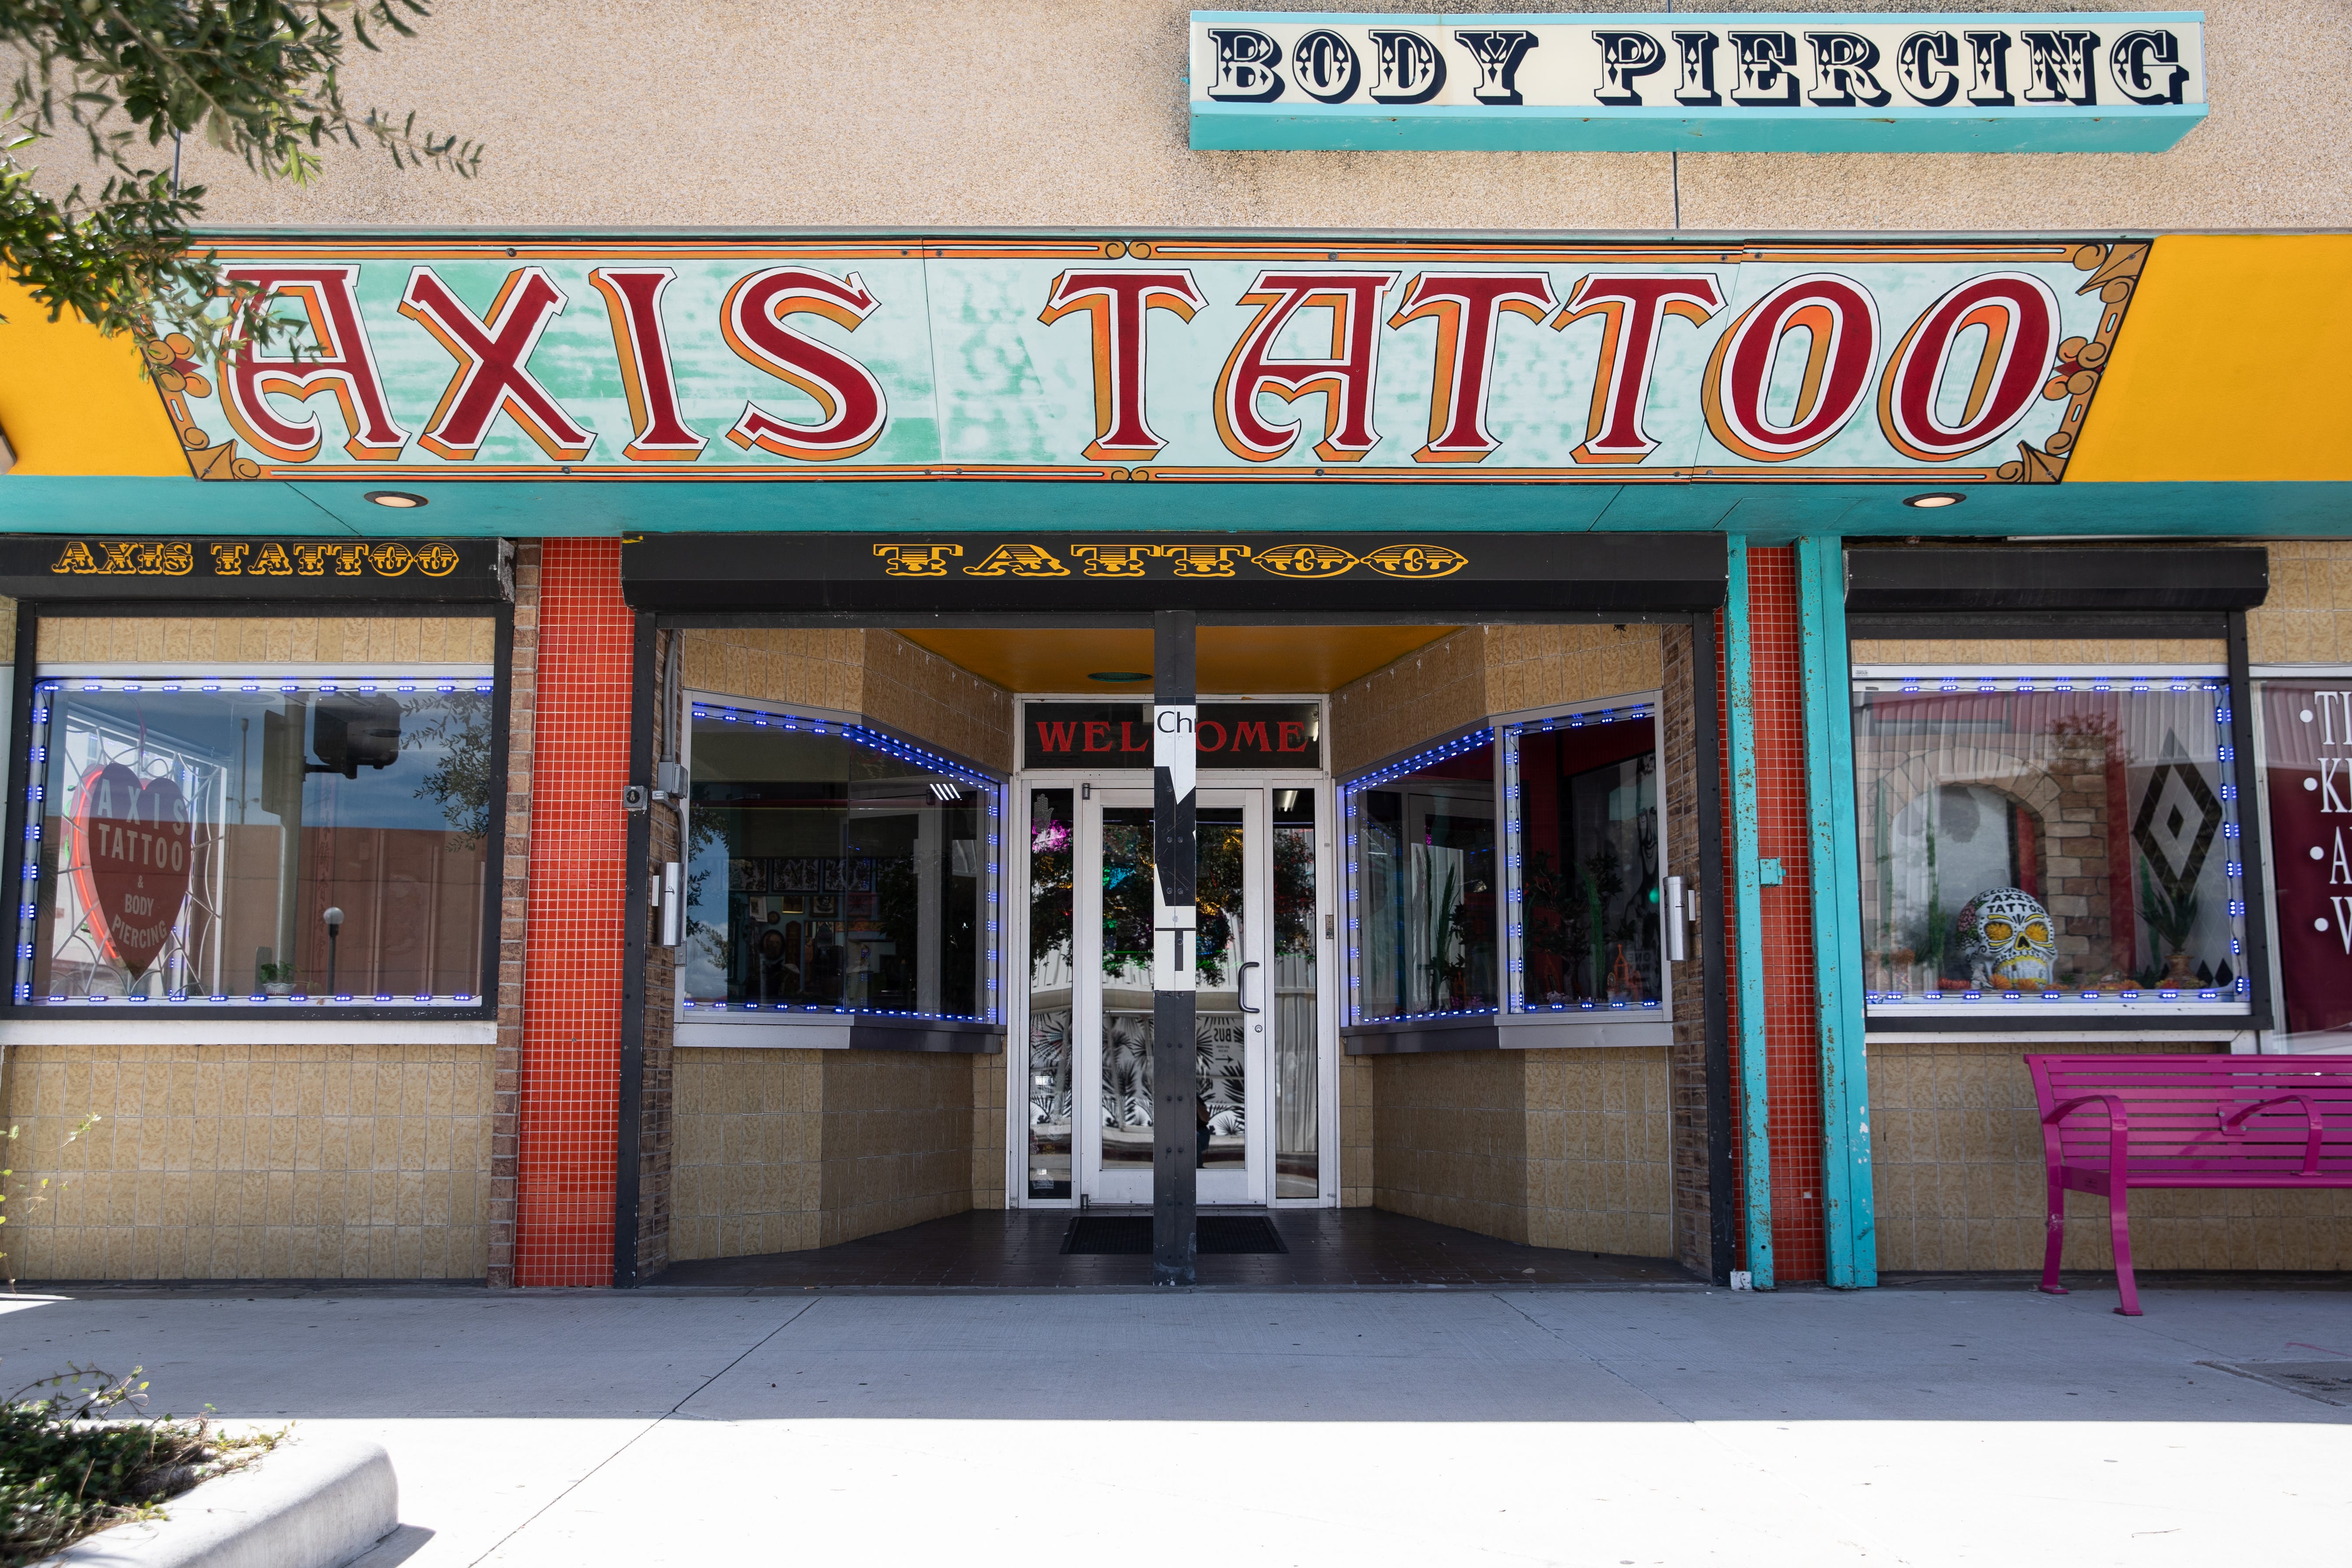 skull tattoo rose tattoo by Don Shapiro at axis tattoo in corpus christi  TX  Time tattoos Ink tattoo Tattoos